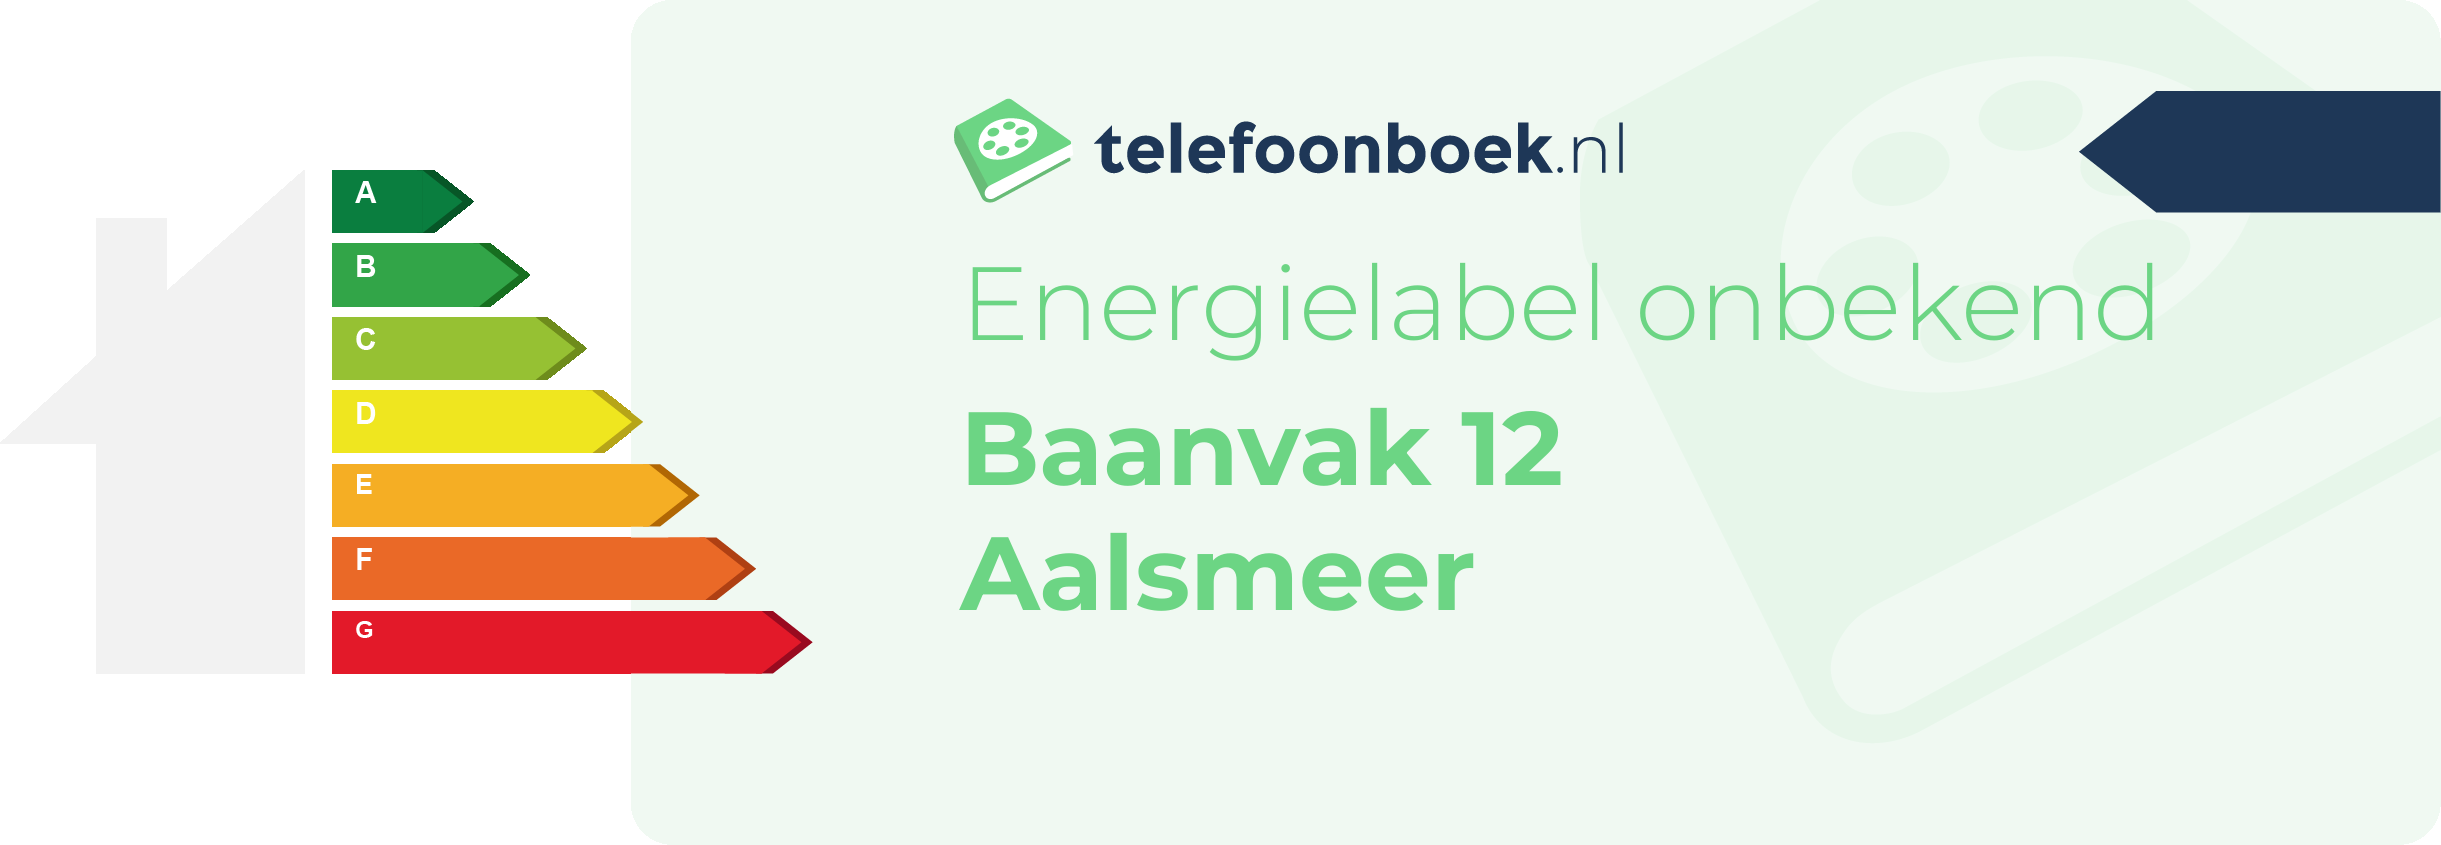 Energielabel Baanvak 12 Aalsmeer